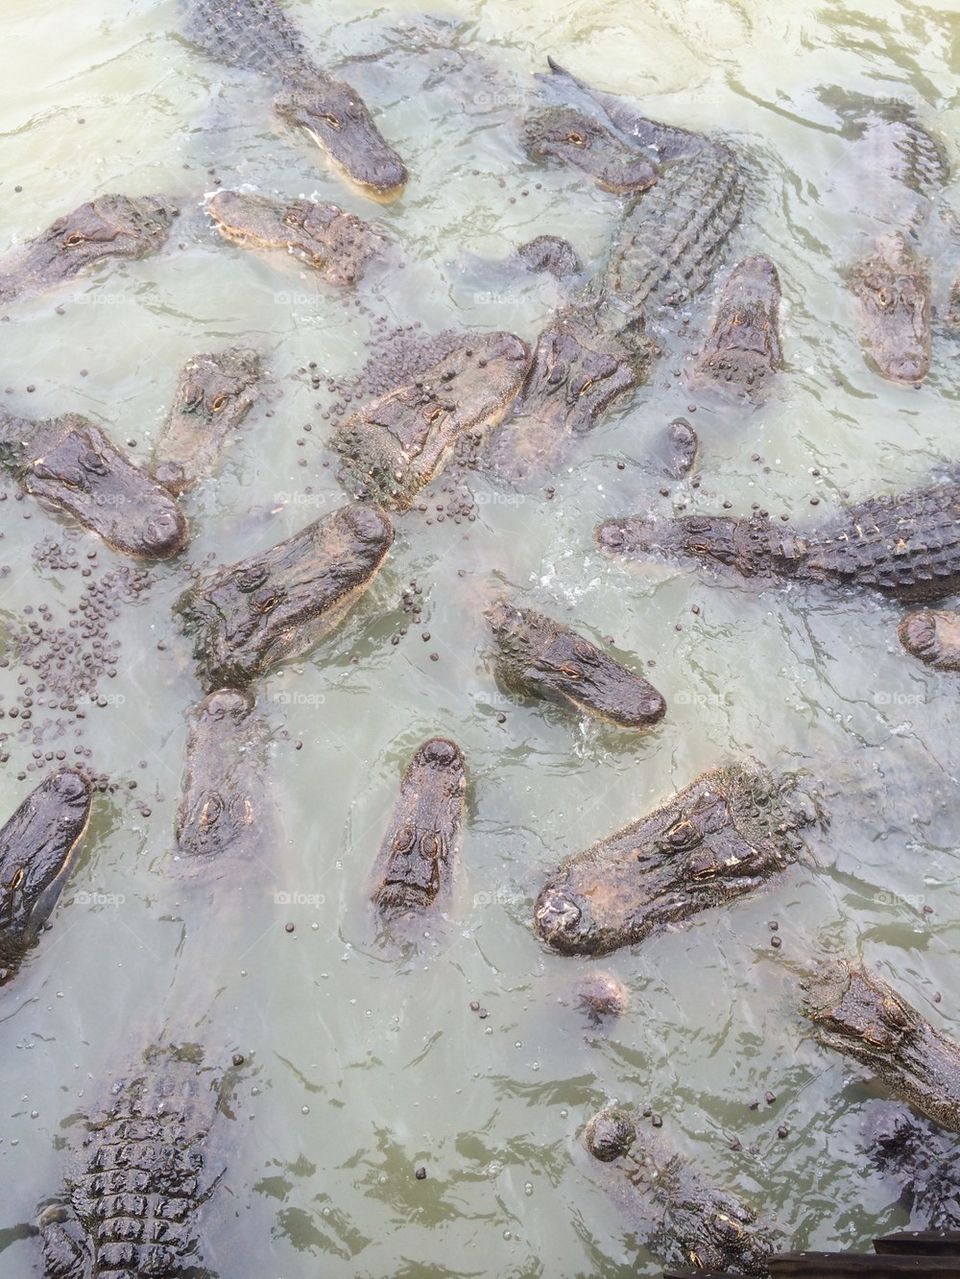 Alligators galore